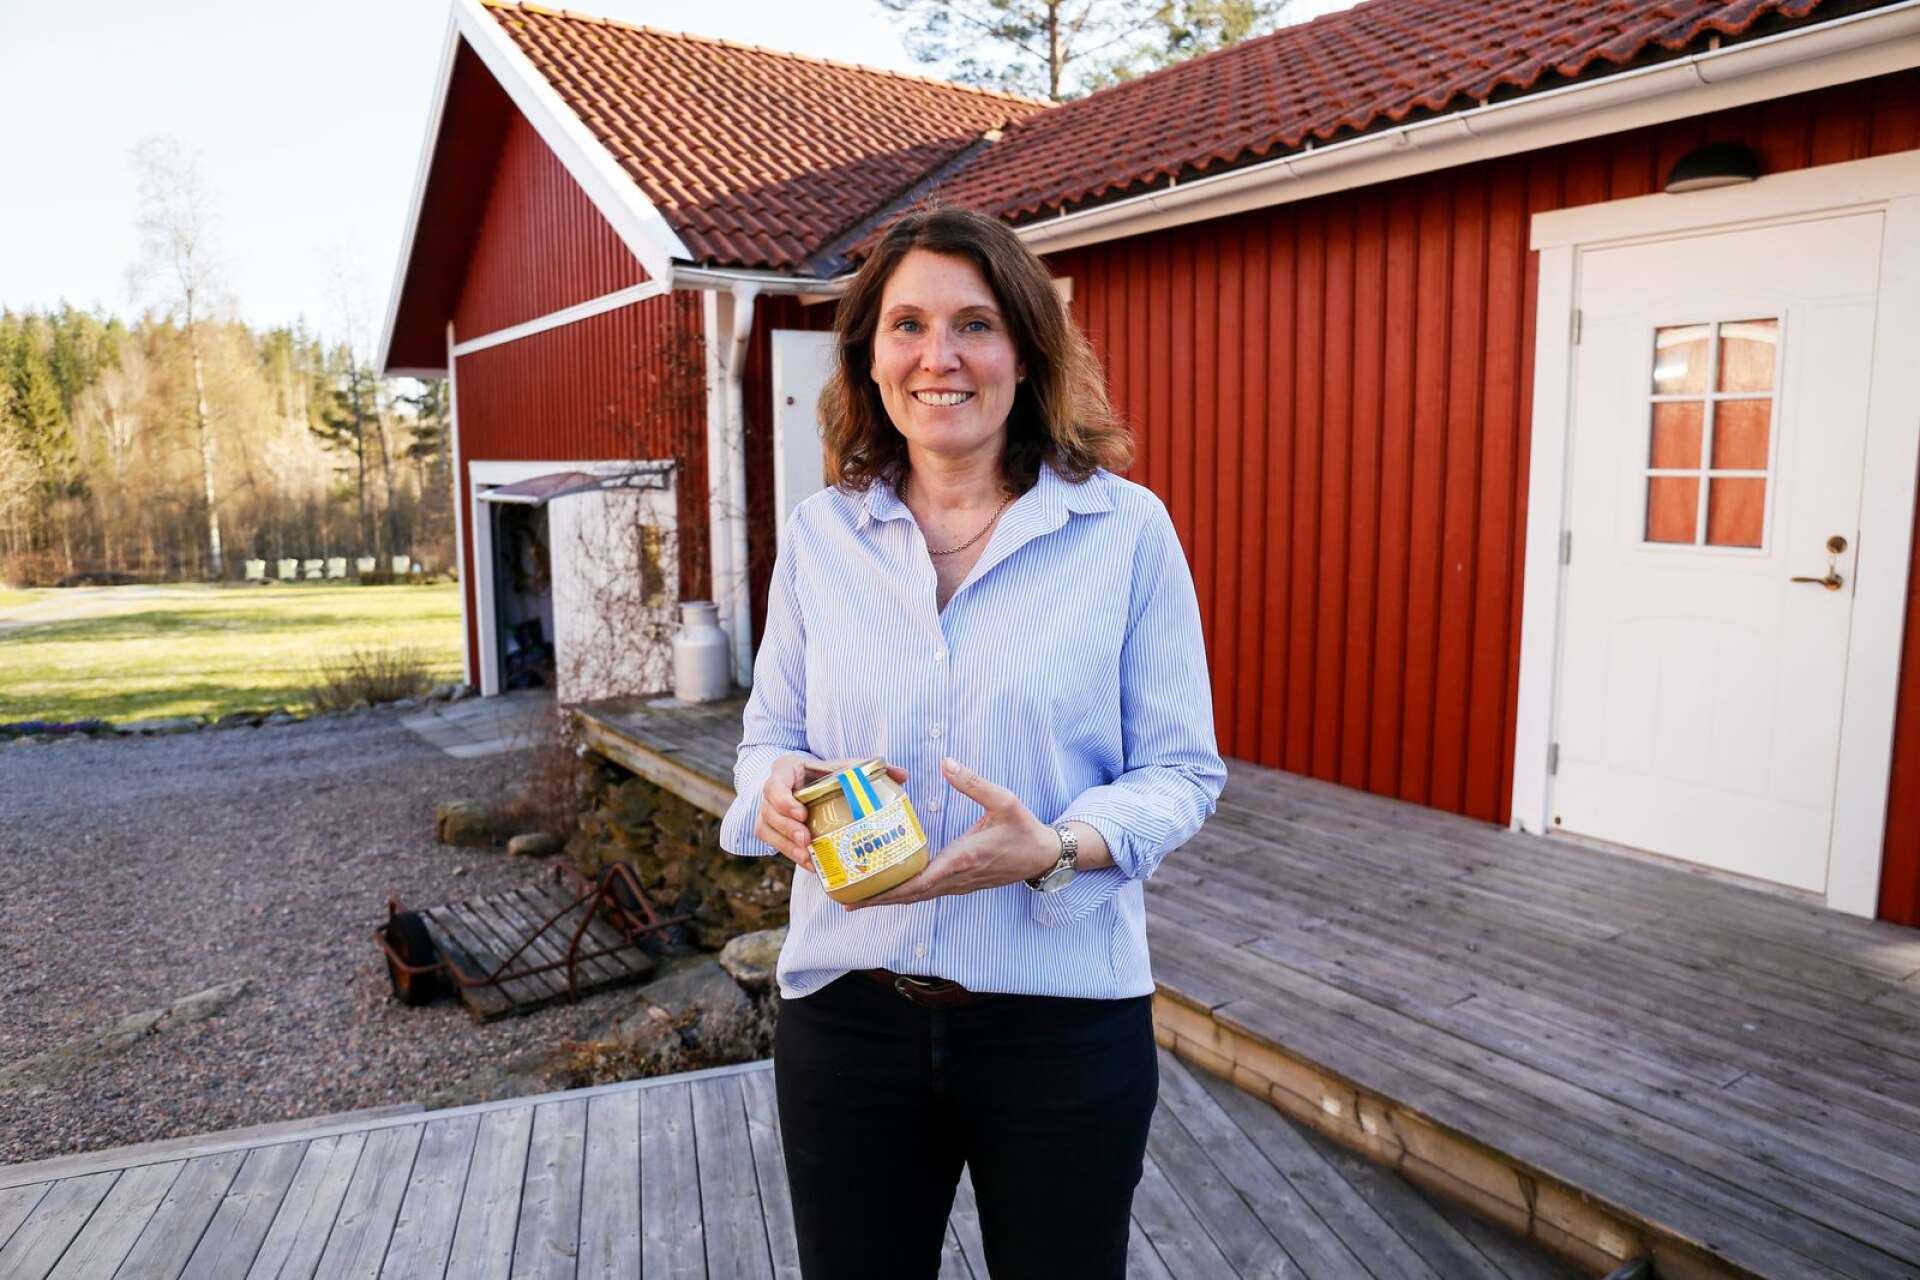 Genom att biodla bidrar man till den biologiska mångfalden, berättar Lillemor Berggren.